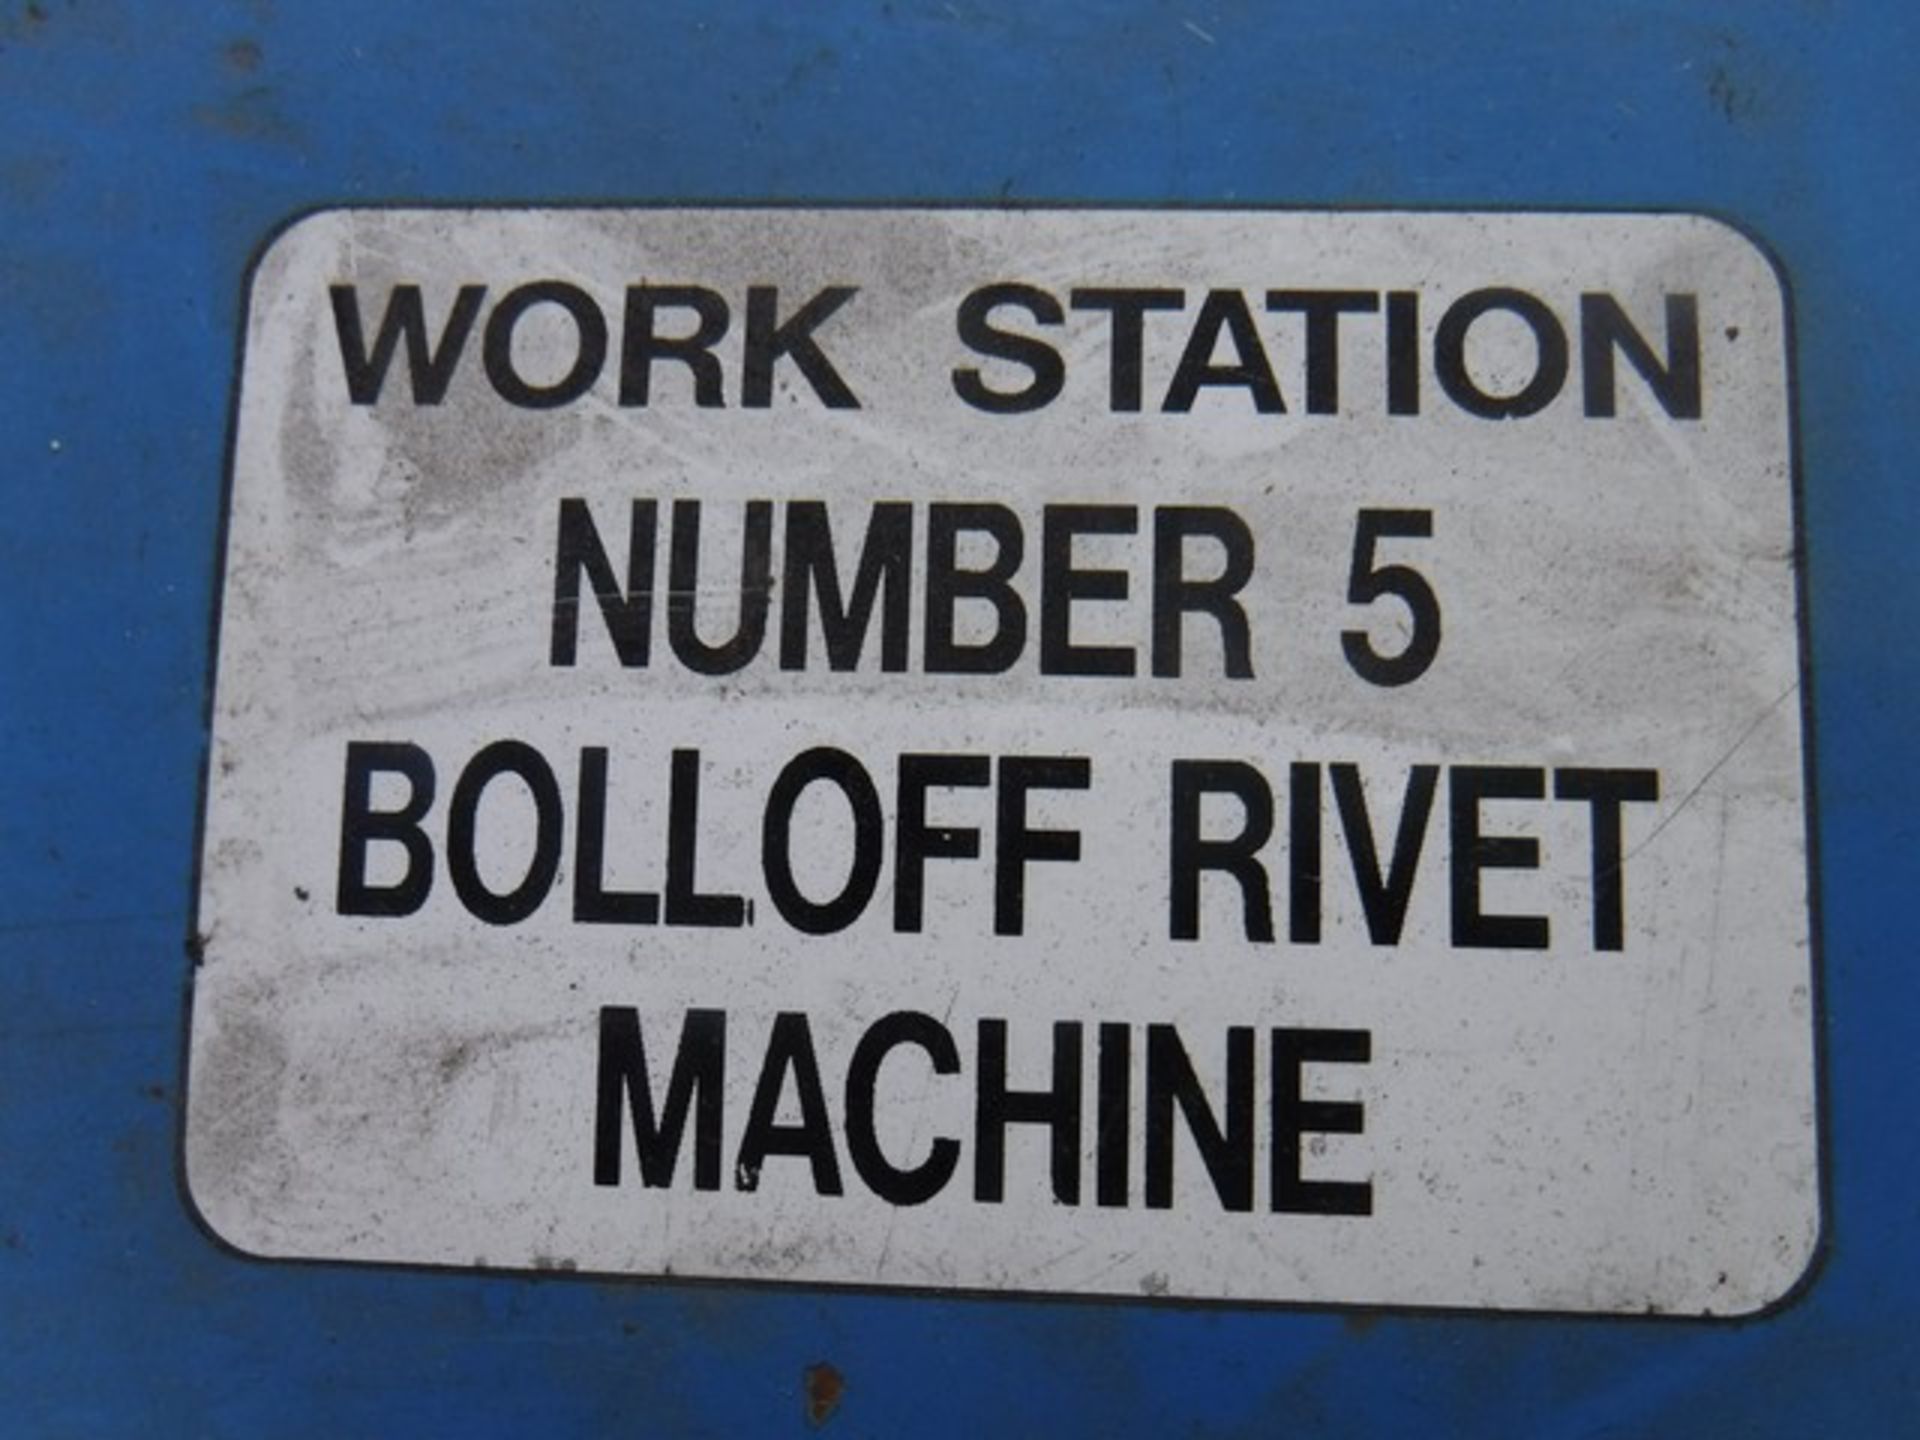 BOLLOFF RIVET MACHINE IN BLUE